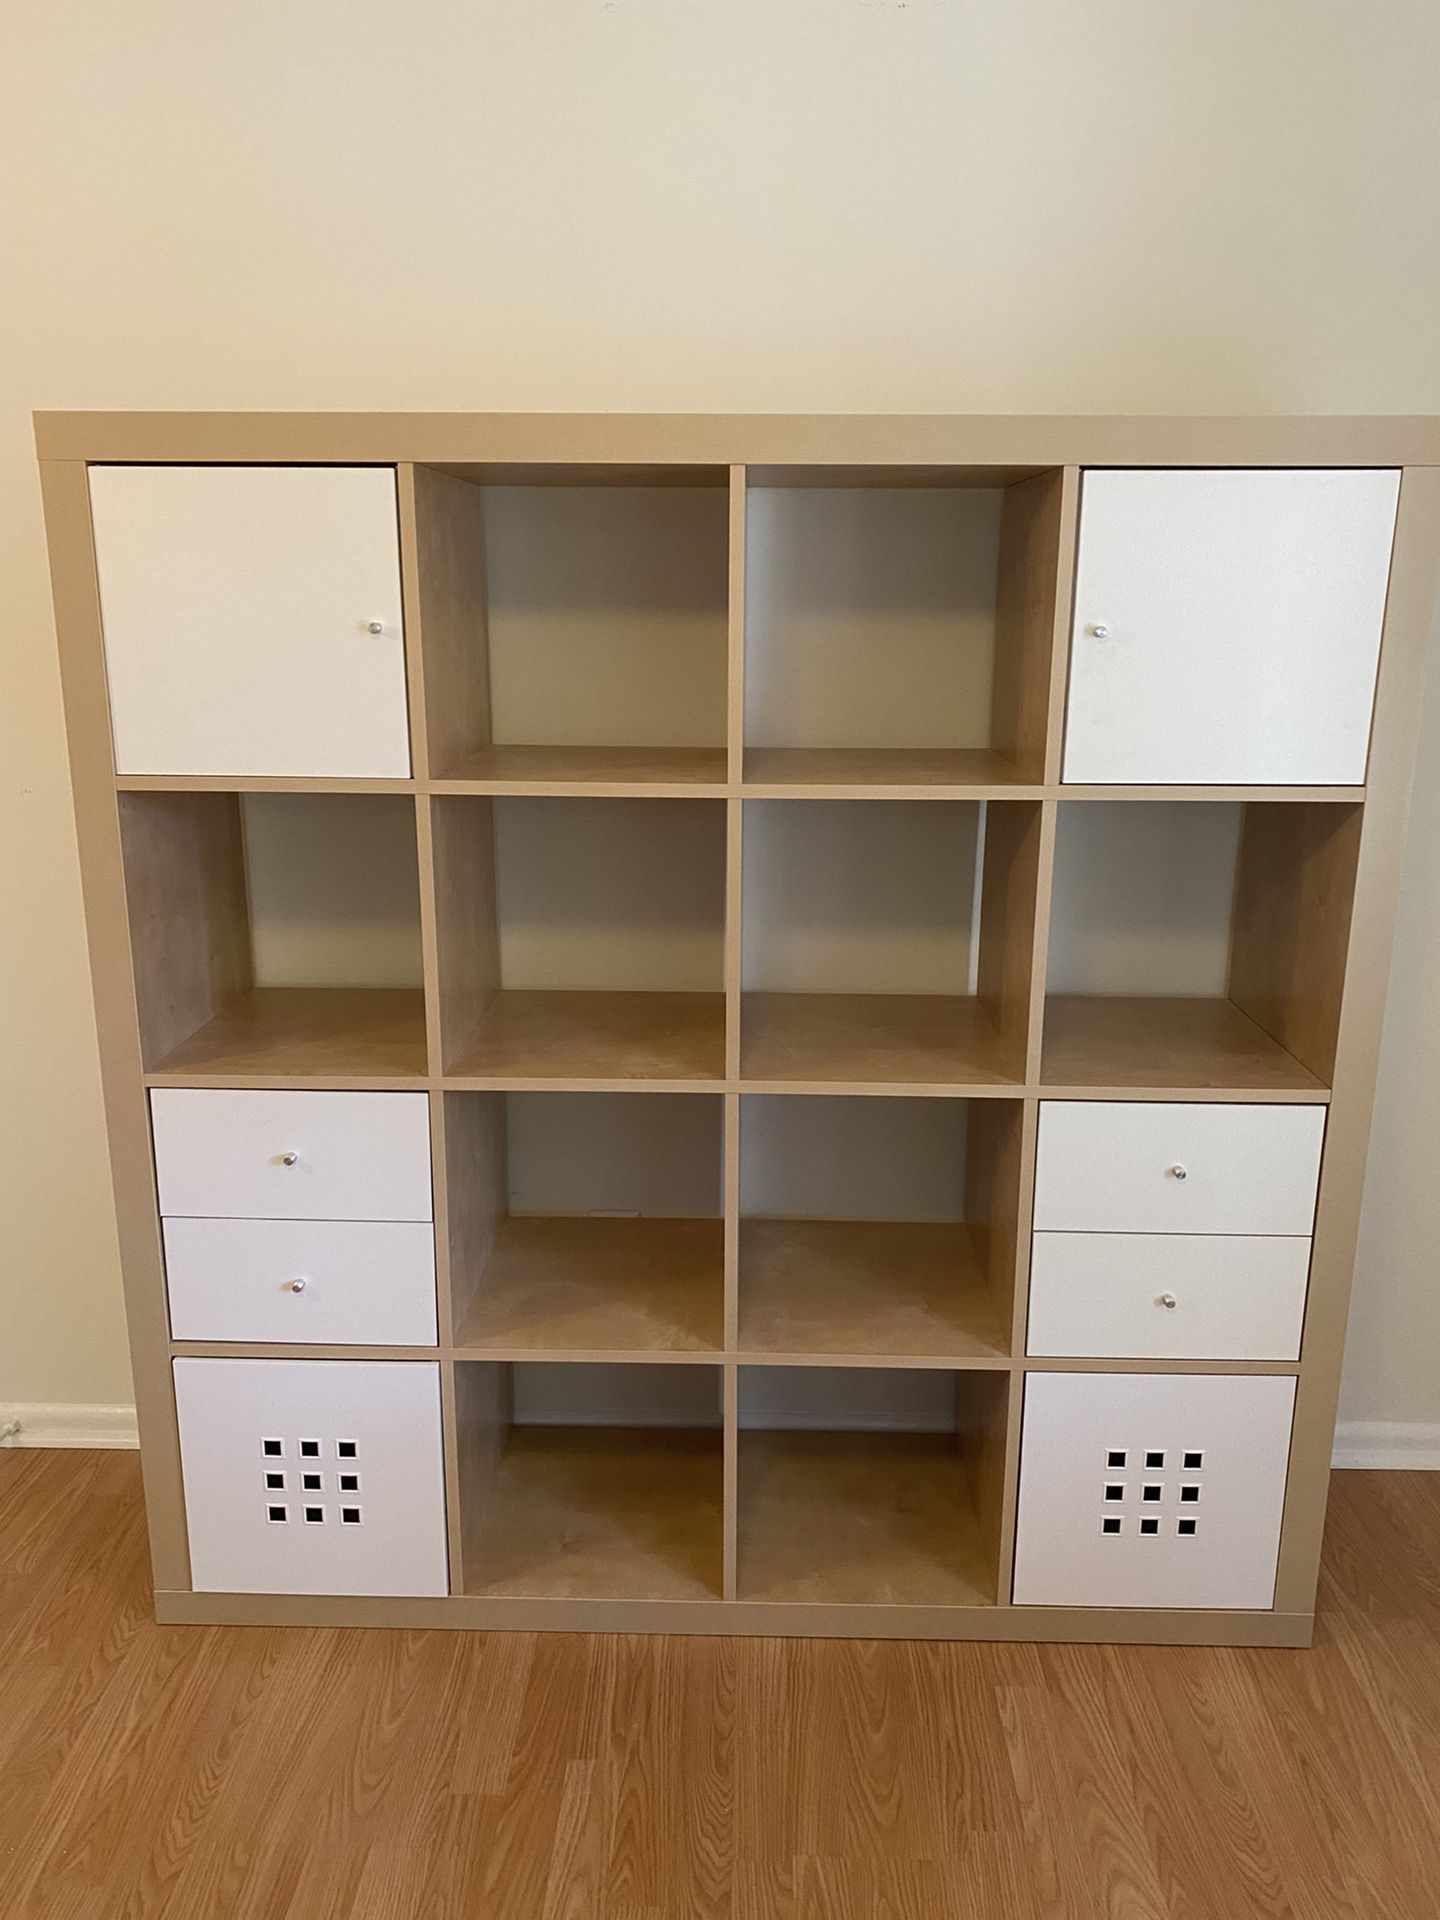 IKEA 4x4 Shelf Unit